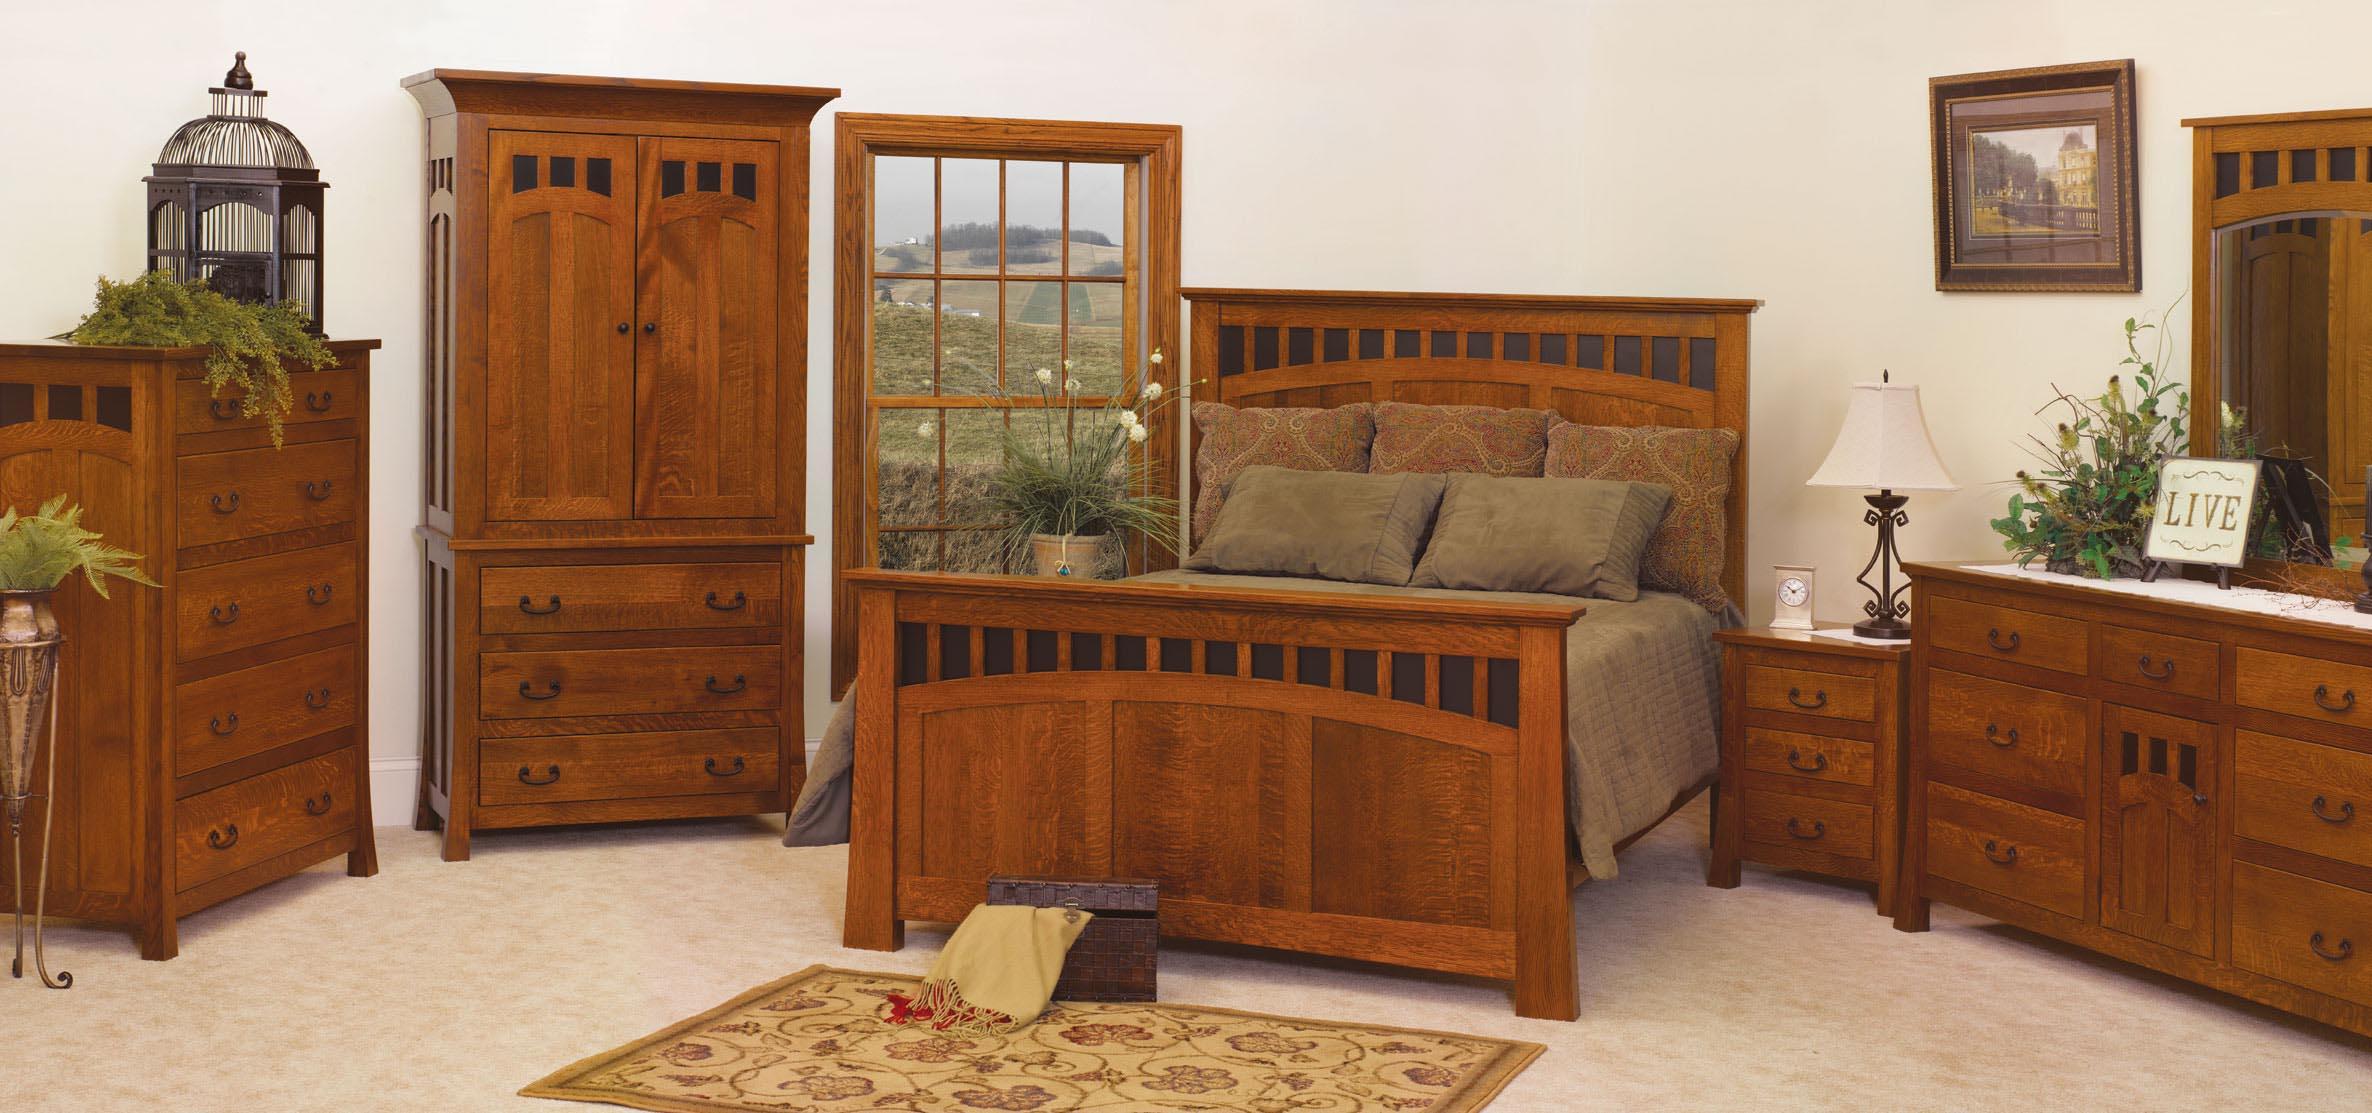 Mission Style Bedroom Furniture Sets